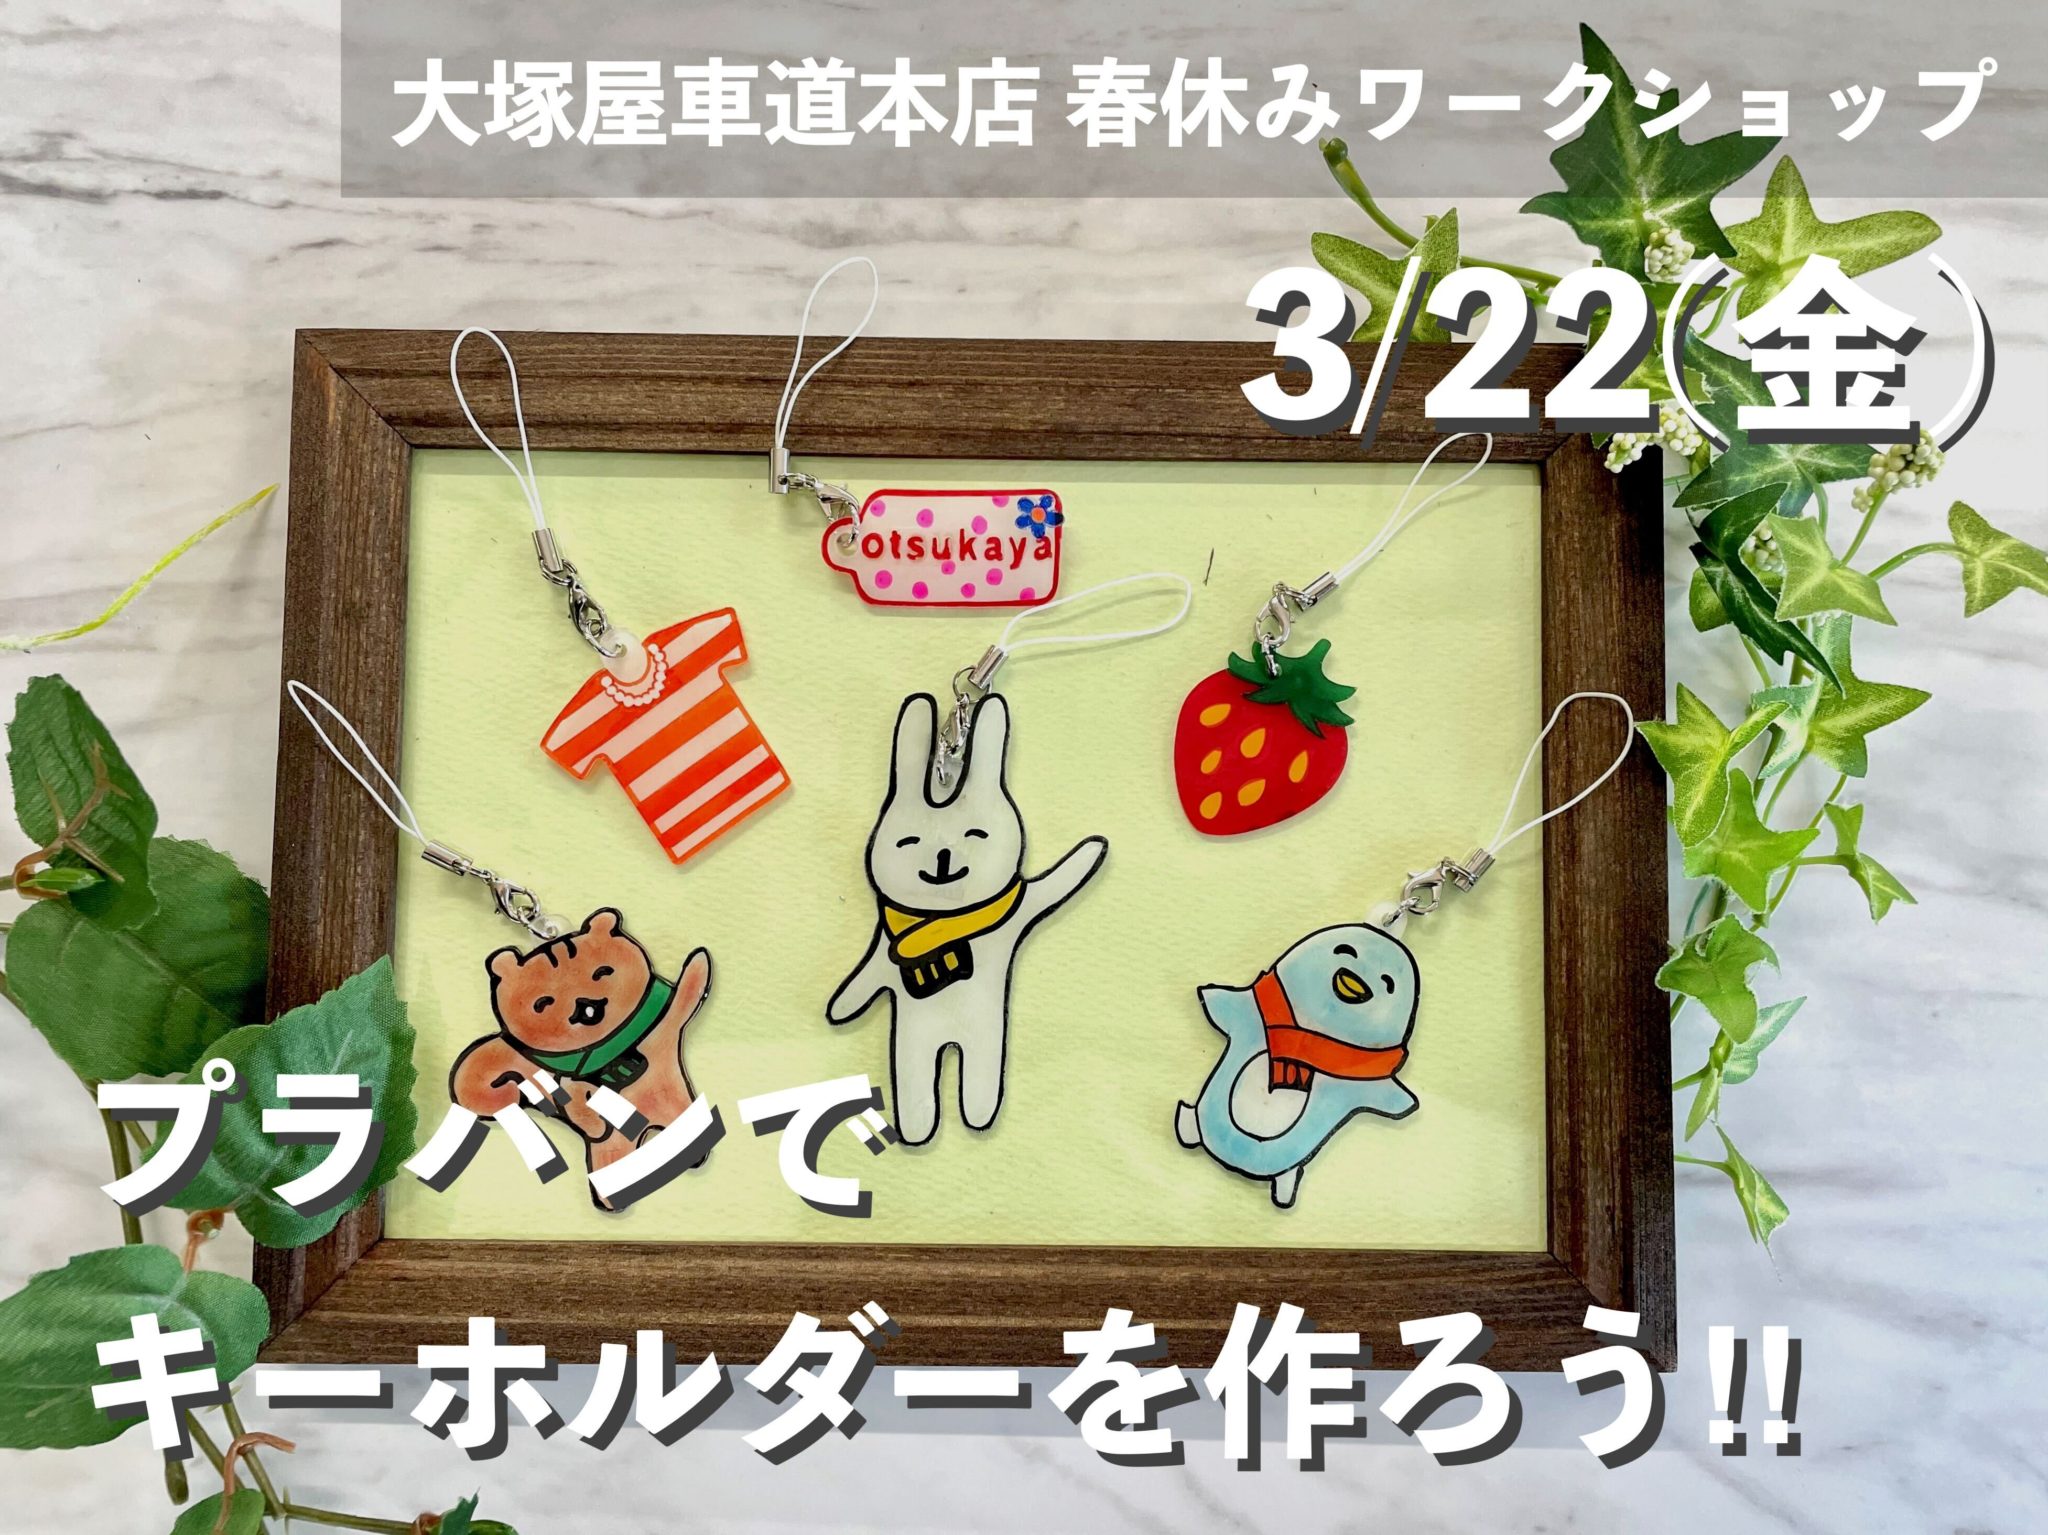 【3月22日(金)】春休みワークショップ「プラバンでキーホルダーを作ろう!!」